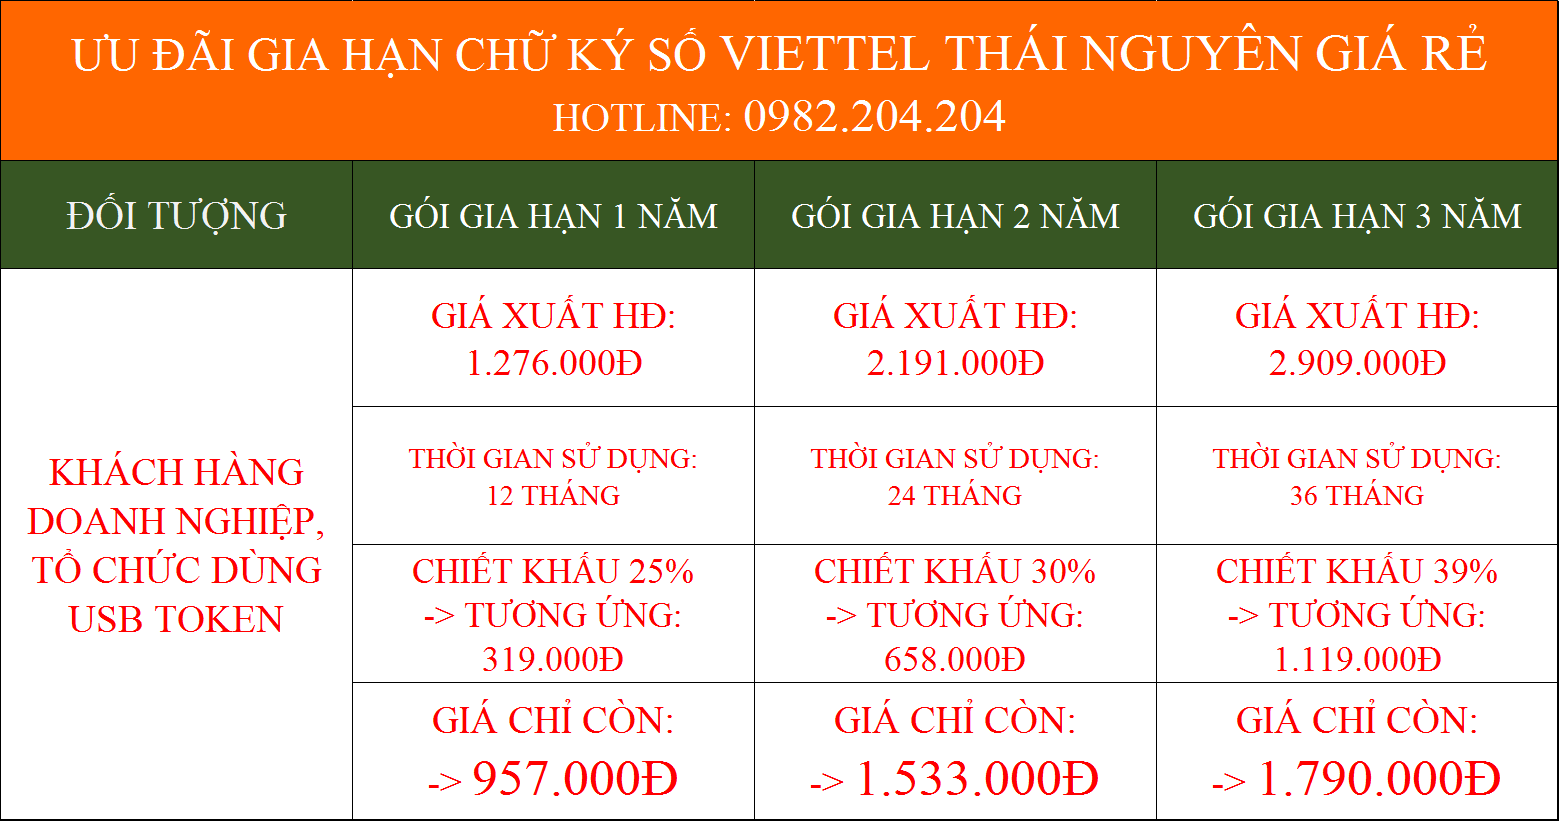 Gia hạn token Viettel tại Thái Nguyên